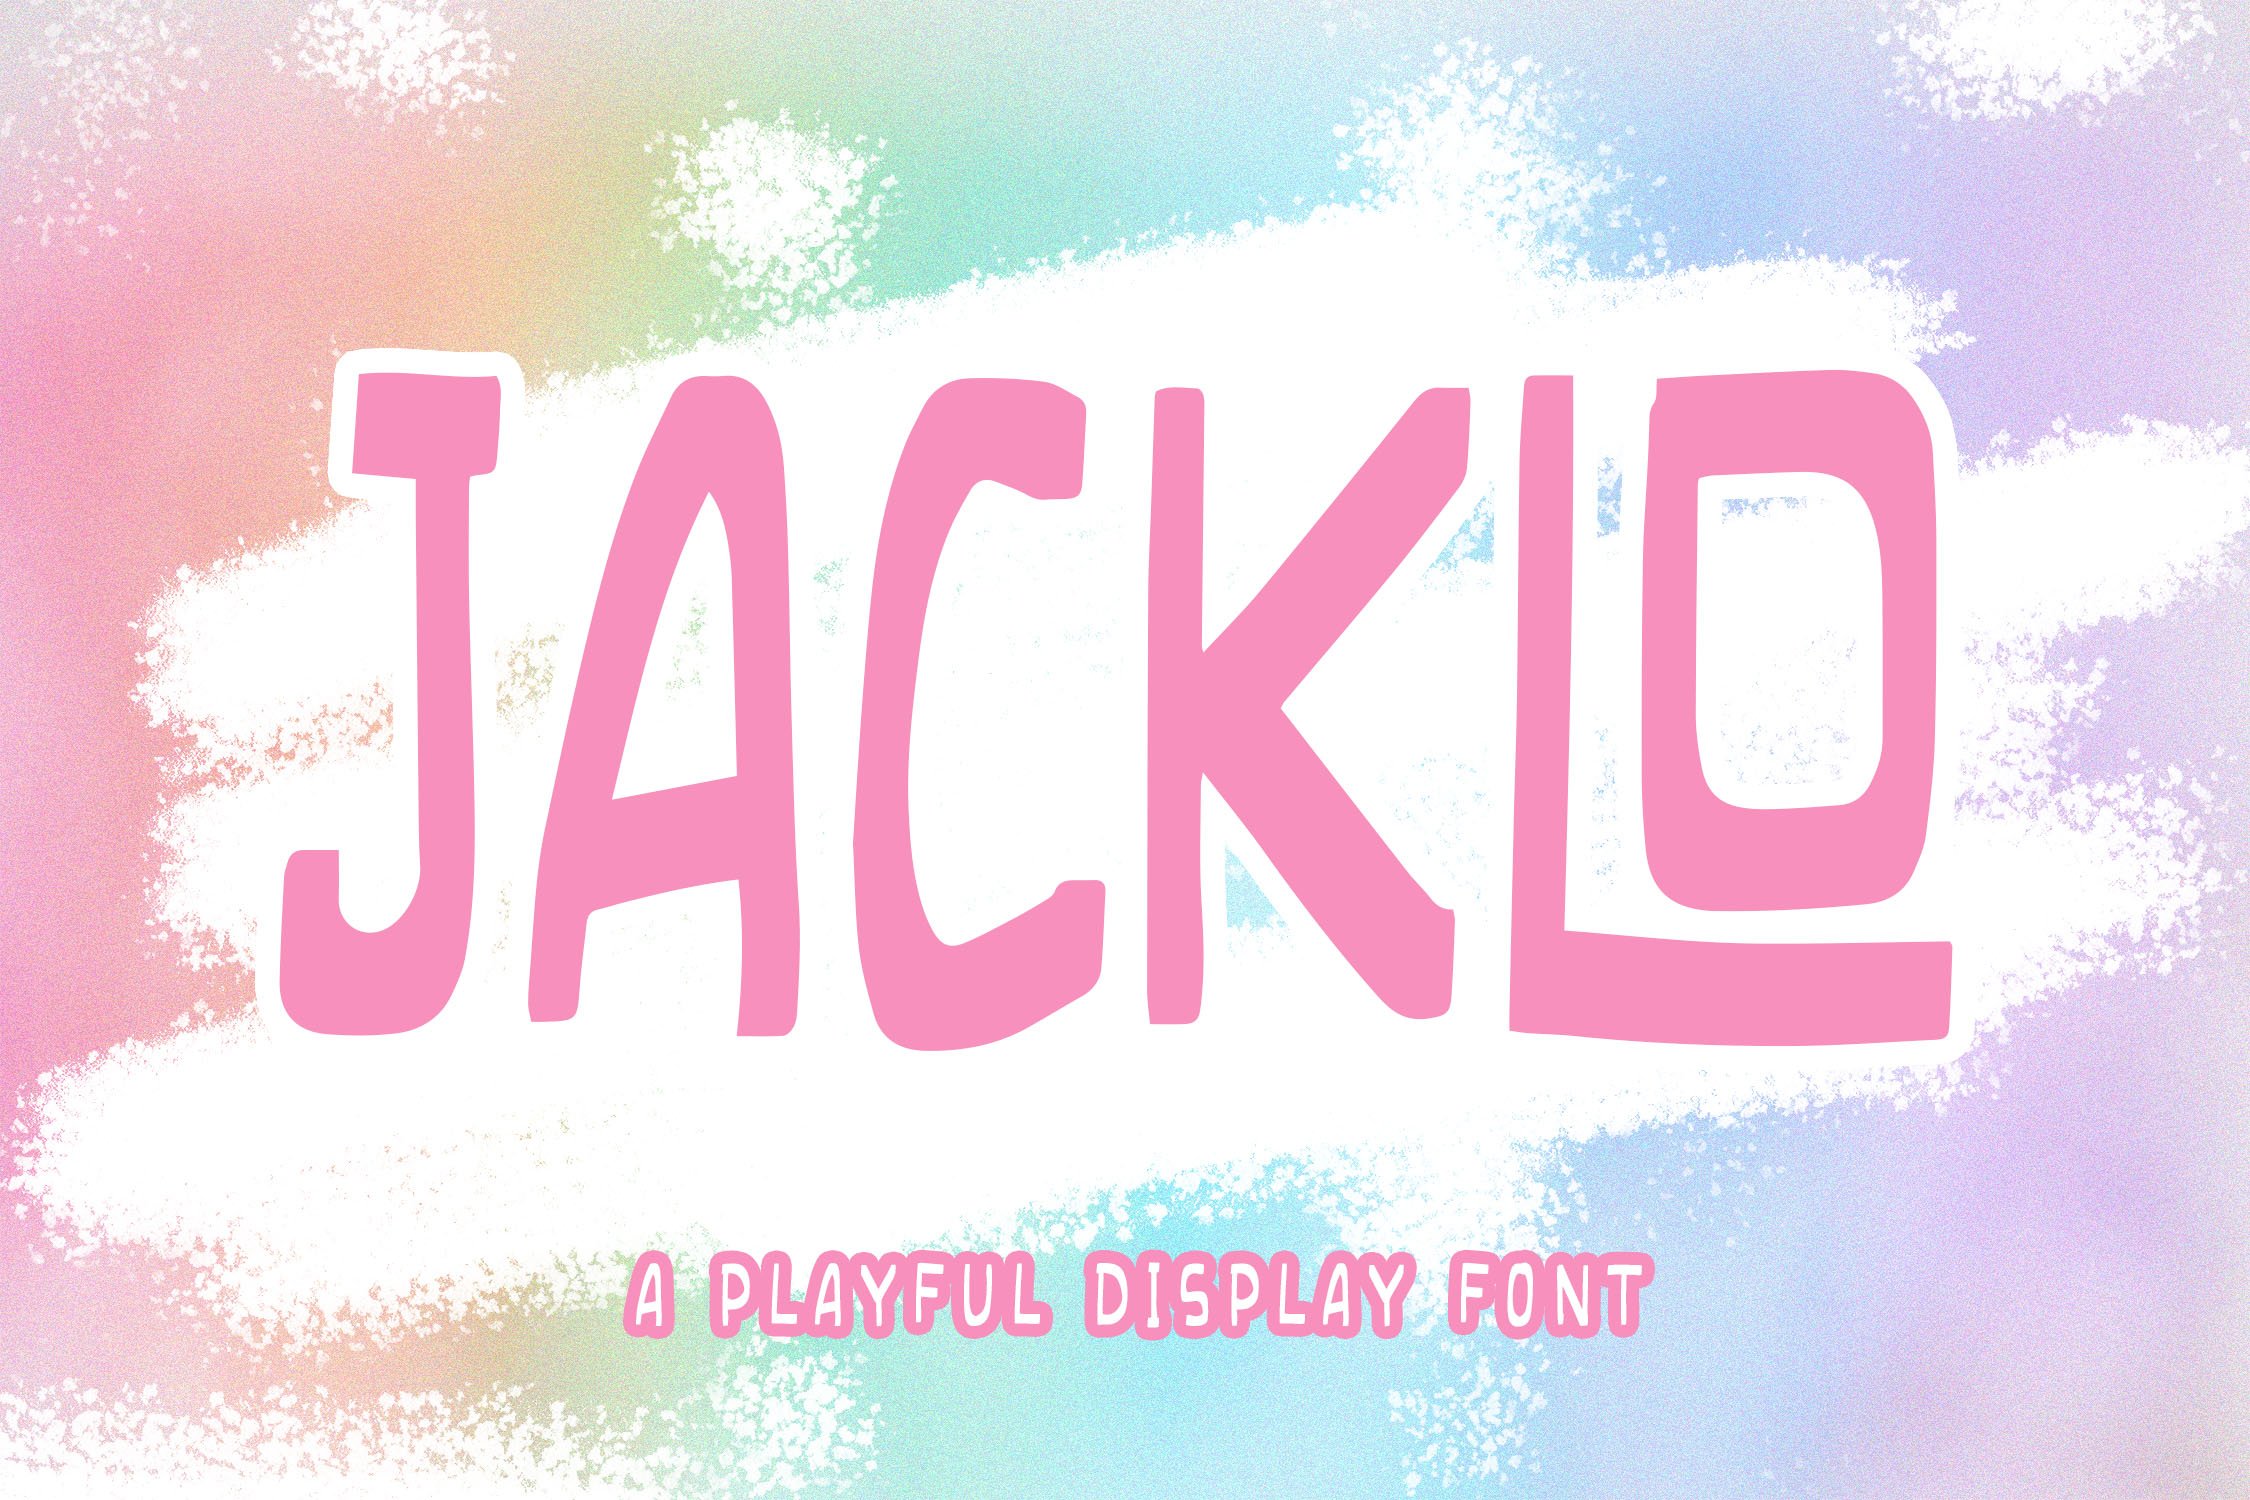 JACKLO - Playful Font cover image.